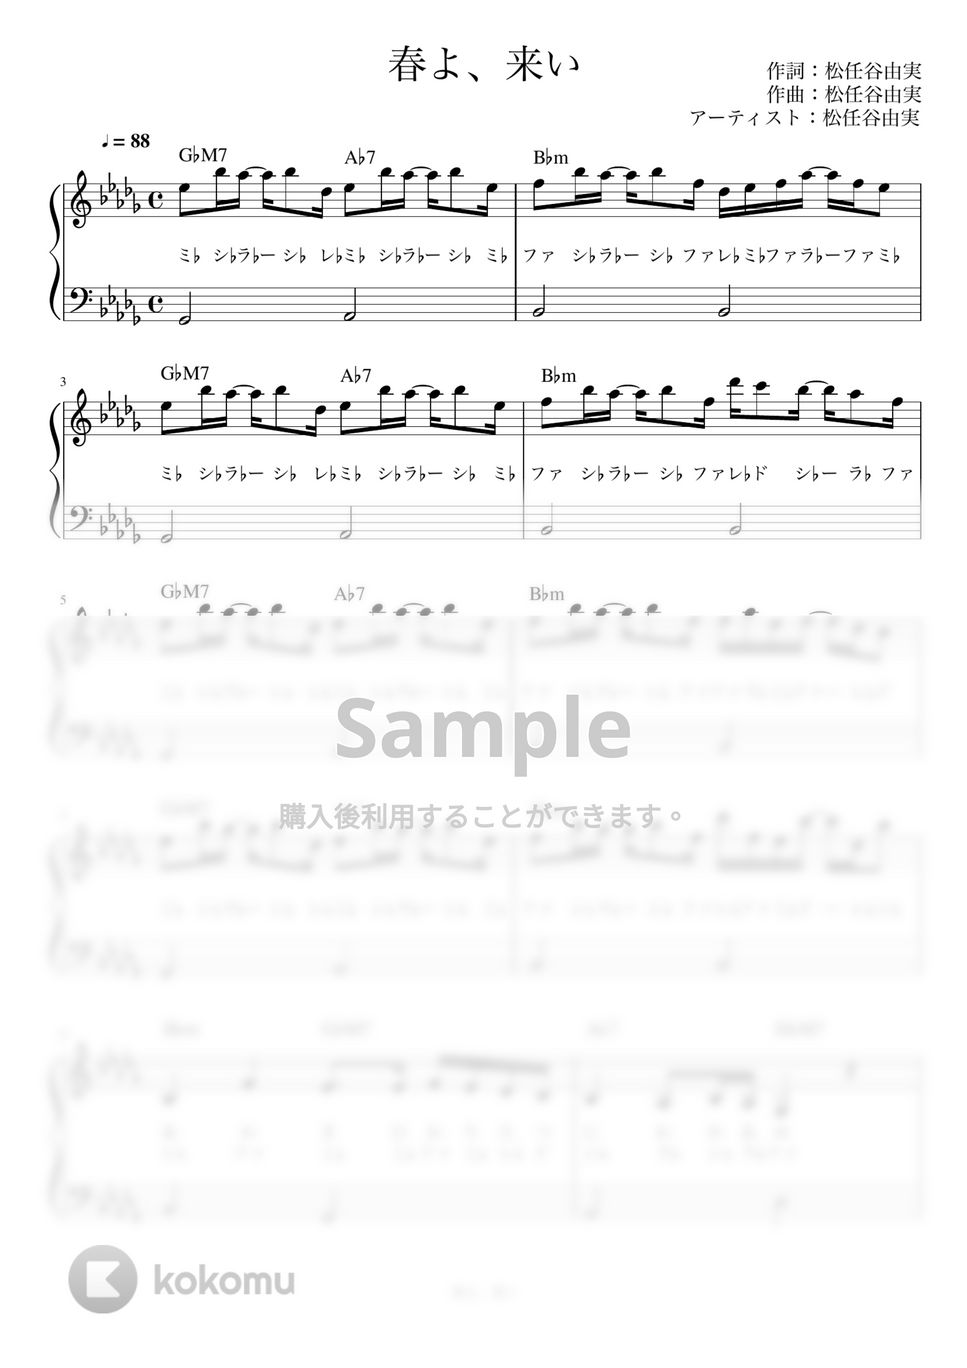 松任谷 由実 - 春よ、来い (かんたん / 歌詞付き / ドレミ付き / 初心者) by piano.tokyo